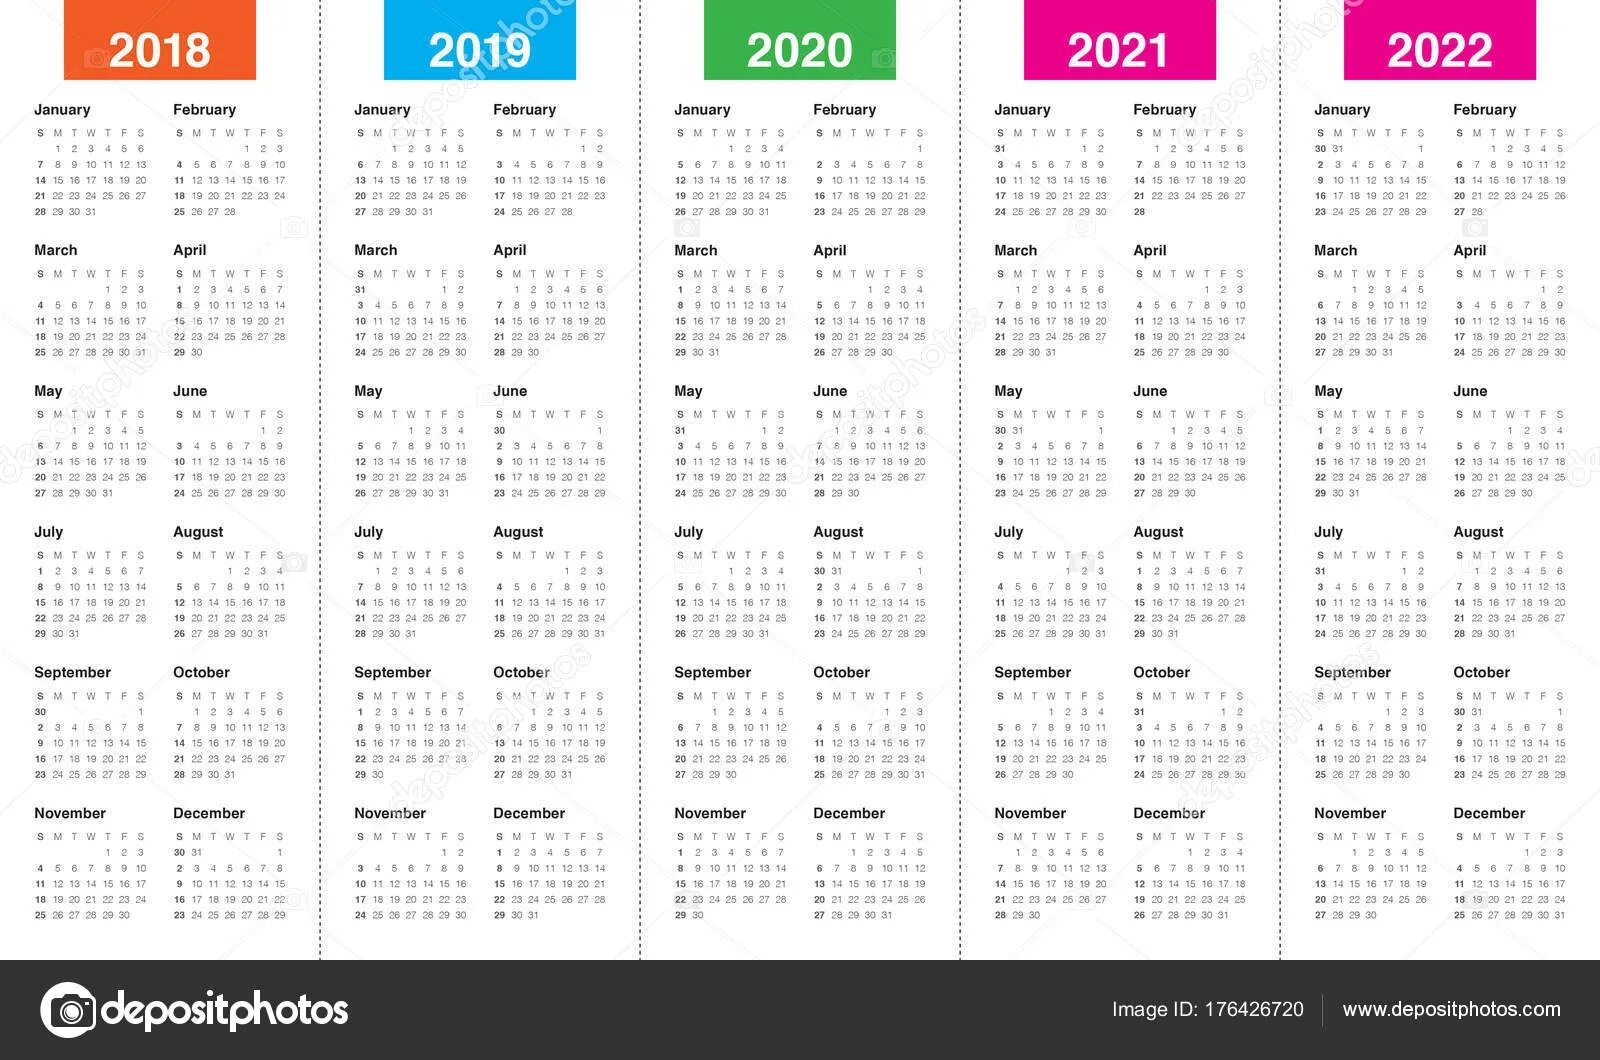 Календарь 2018 2019 2020 2021. Календарь 2021 2022 2023 2024. (−2021) ( − 2021 ) + + (−2020) ( − 2020 ) + + (−2019) ( − 2019 ) + + ... + + 2022 2022 + + 2023 2023 .. Календарь 2019 2020 2021 2022.